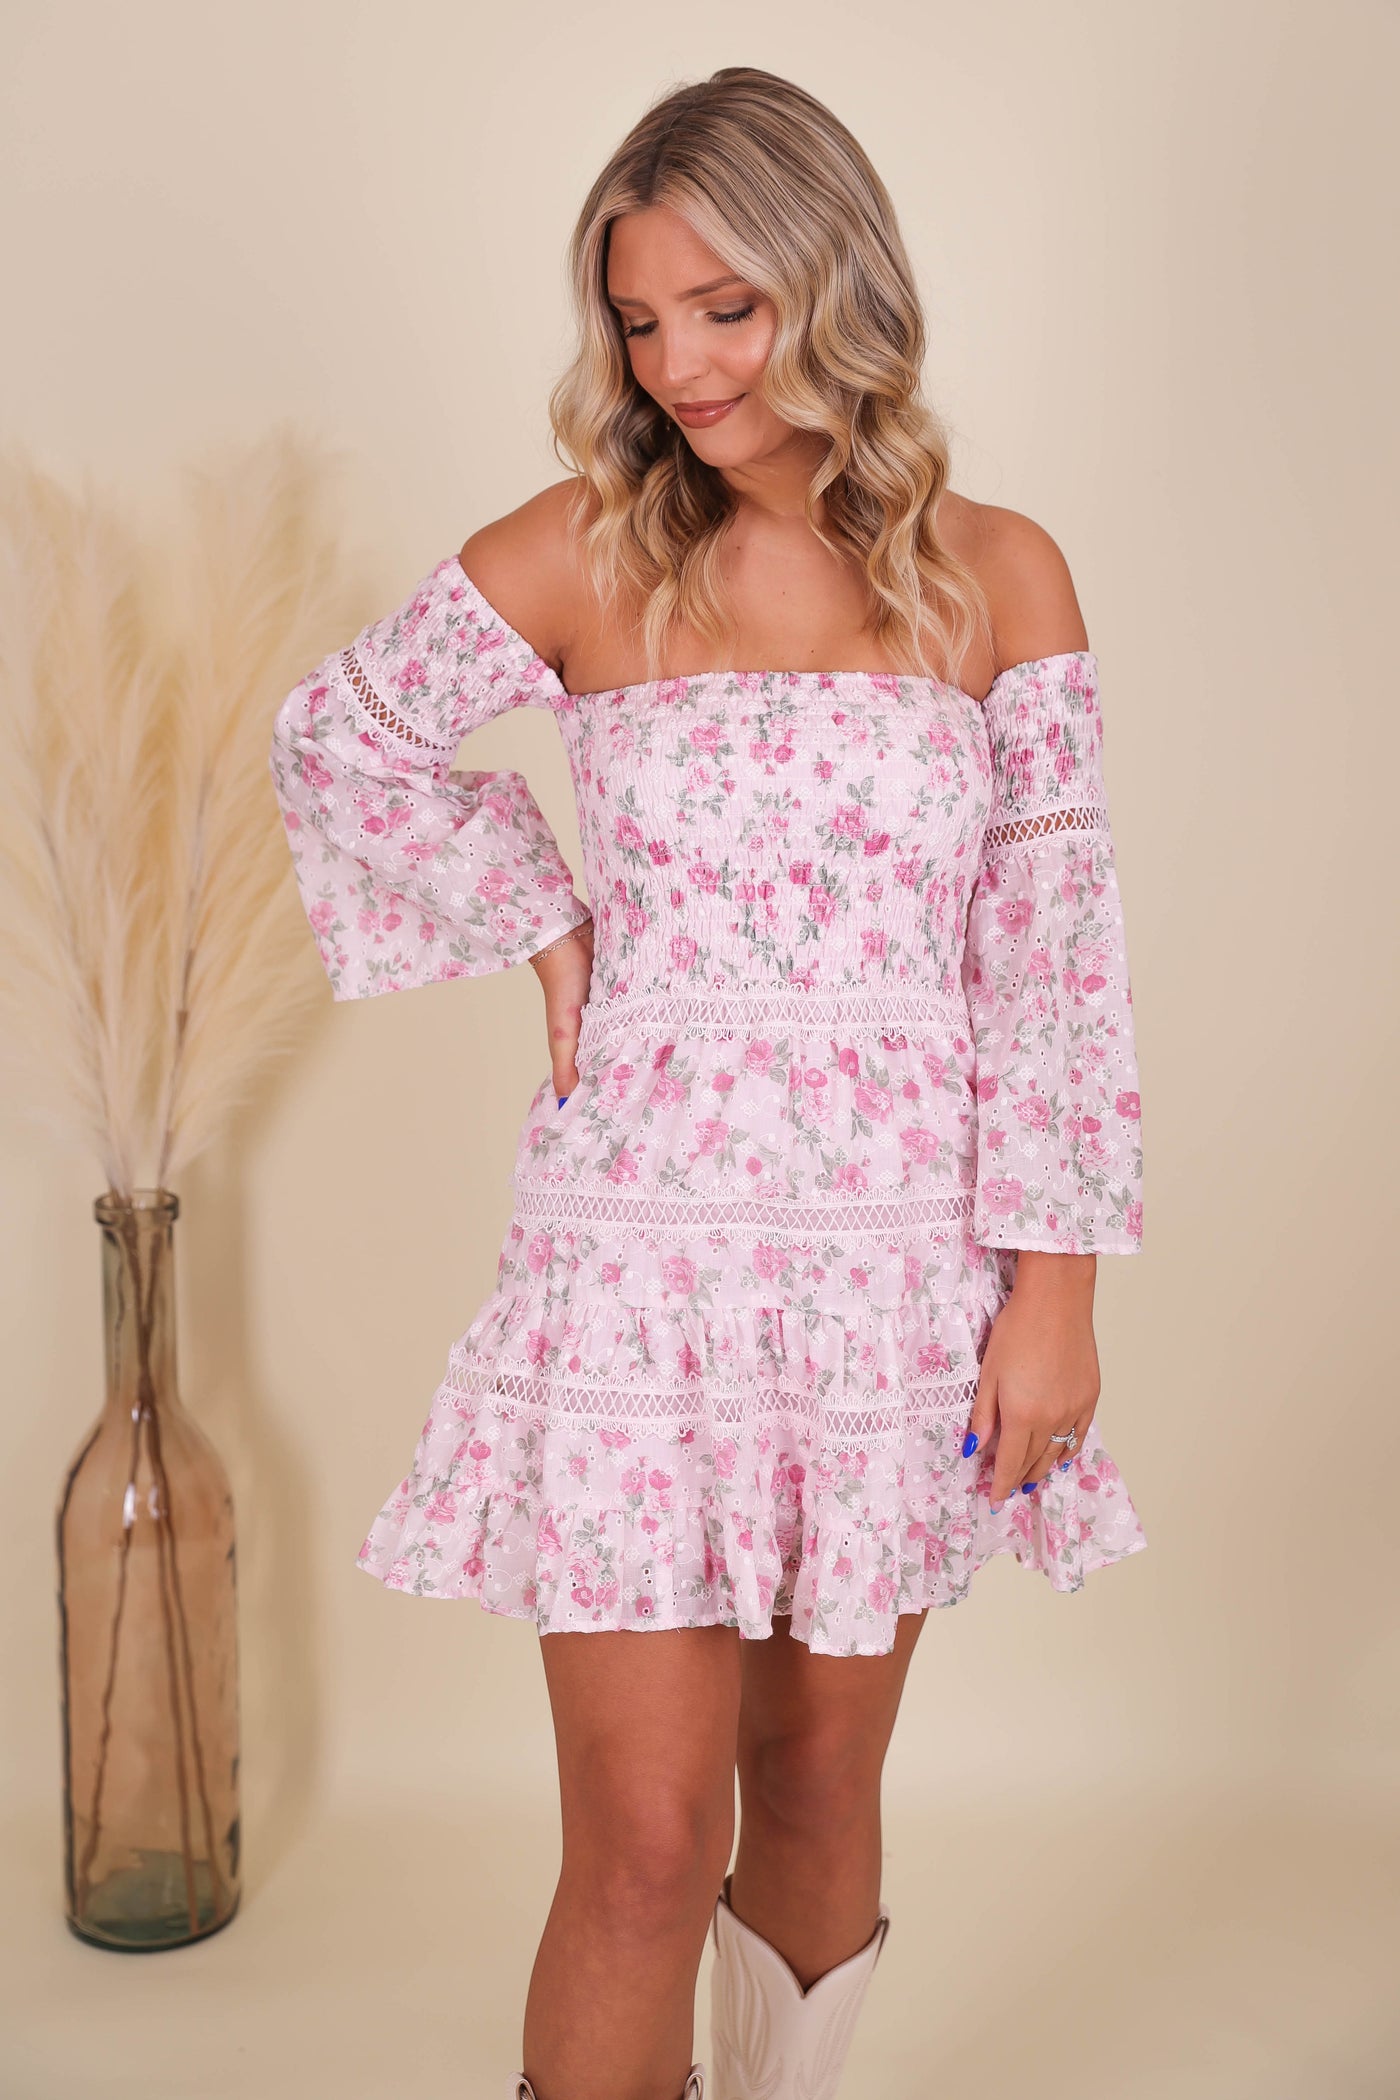 Romantic Floral Pink Dress- Fancy Floral Dress- Cottage Core Dresses- Love Shack Dupe